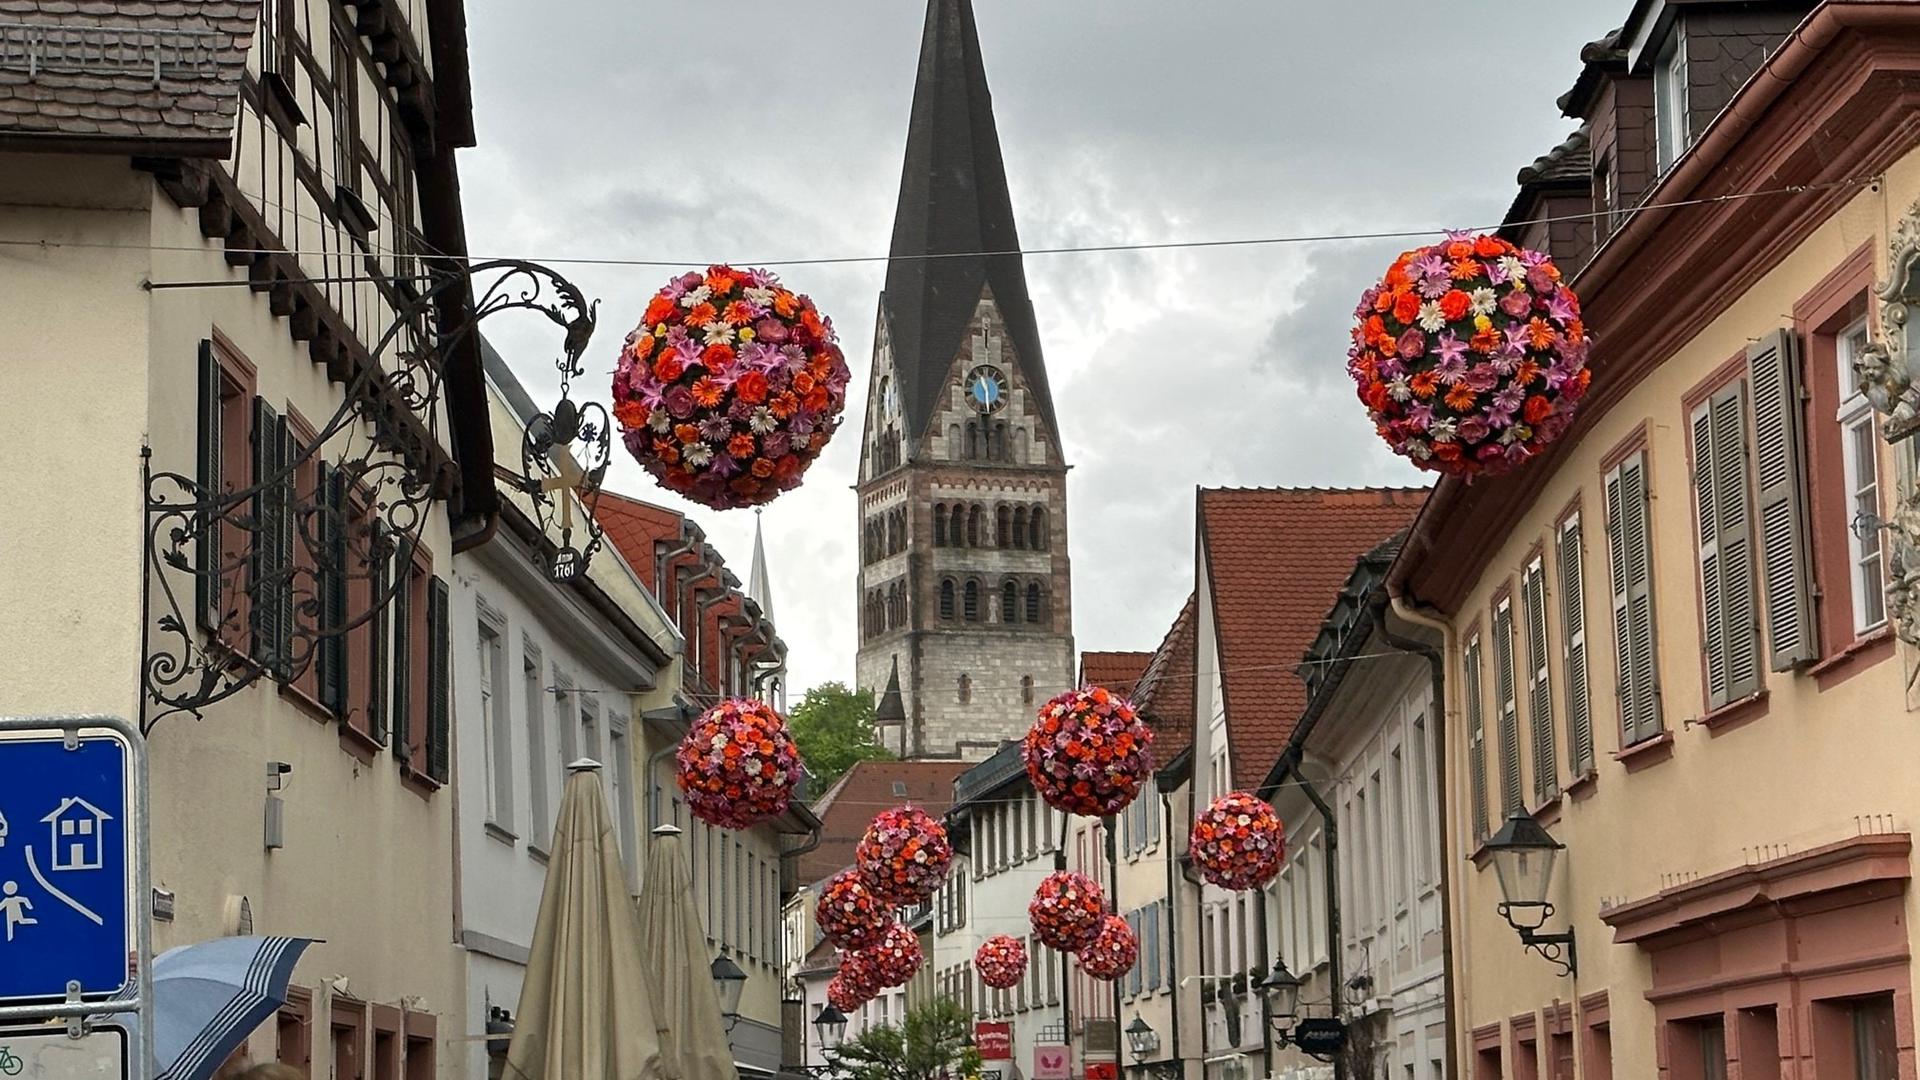 Sommerliches Flair verbreiten die bunten Blumenkugeln, wie sie in der Innenstadt aufgehängt wurden – hier ein Bild aus der Kronenstraße. 